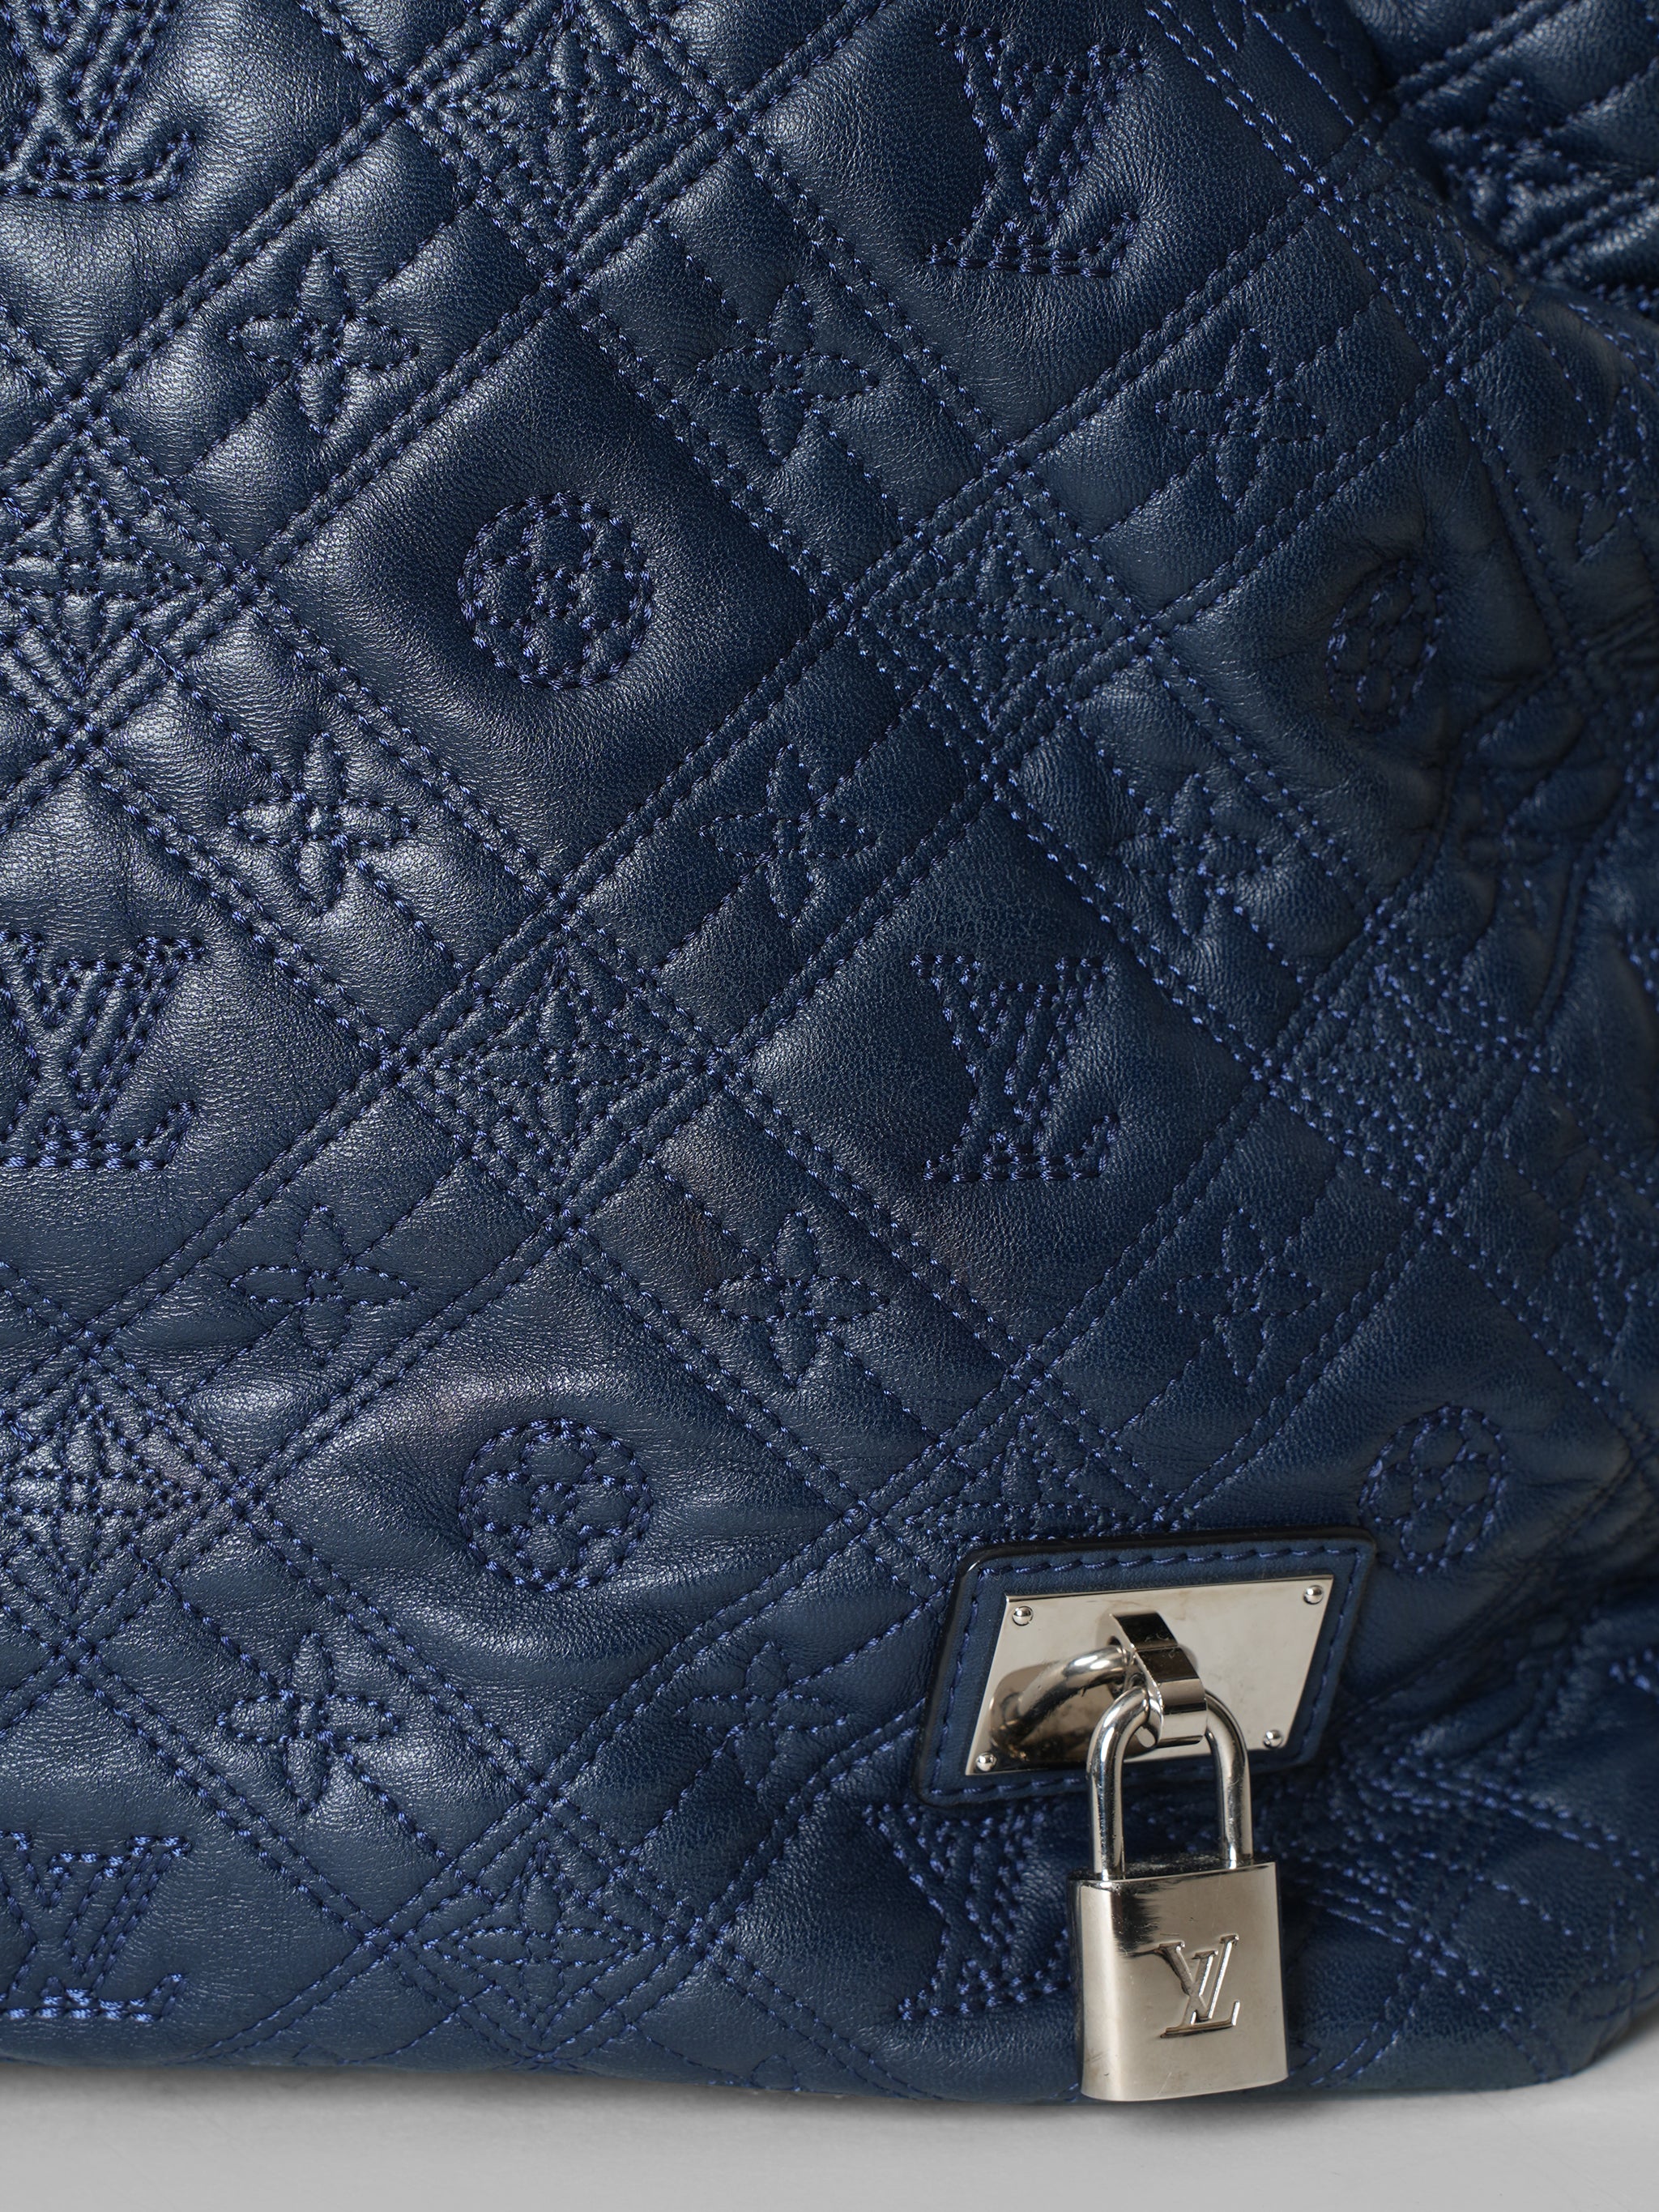 Louis Vuitton Blue Monogram Lilia Pm Bag